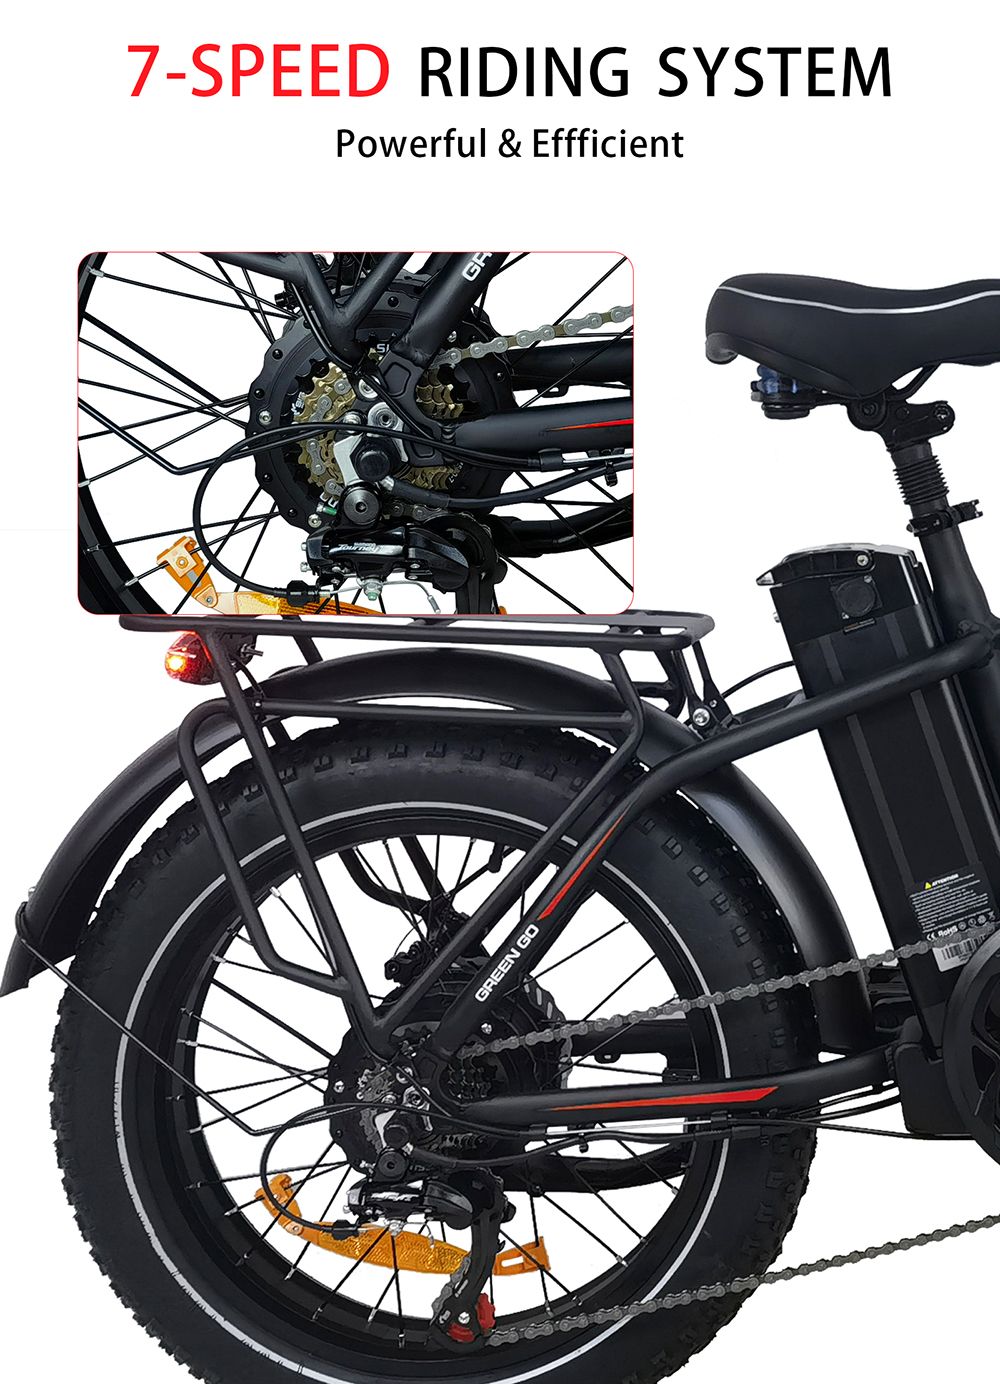 Vélo électrique BAOLUJIE DZ2031, moteur 500 W, batterie 48 V 13 Ah, pneu 20 x 4.0 pouces, portée 35-45 km, vitesse maximale 40 km/h, frein à disque mécanique SHIMANO à 7 vitesses - Noir